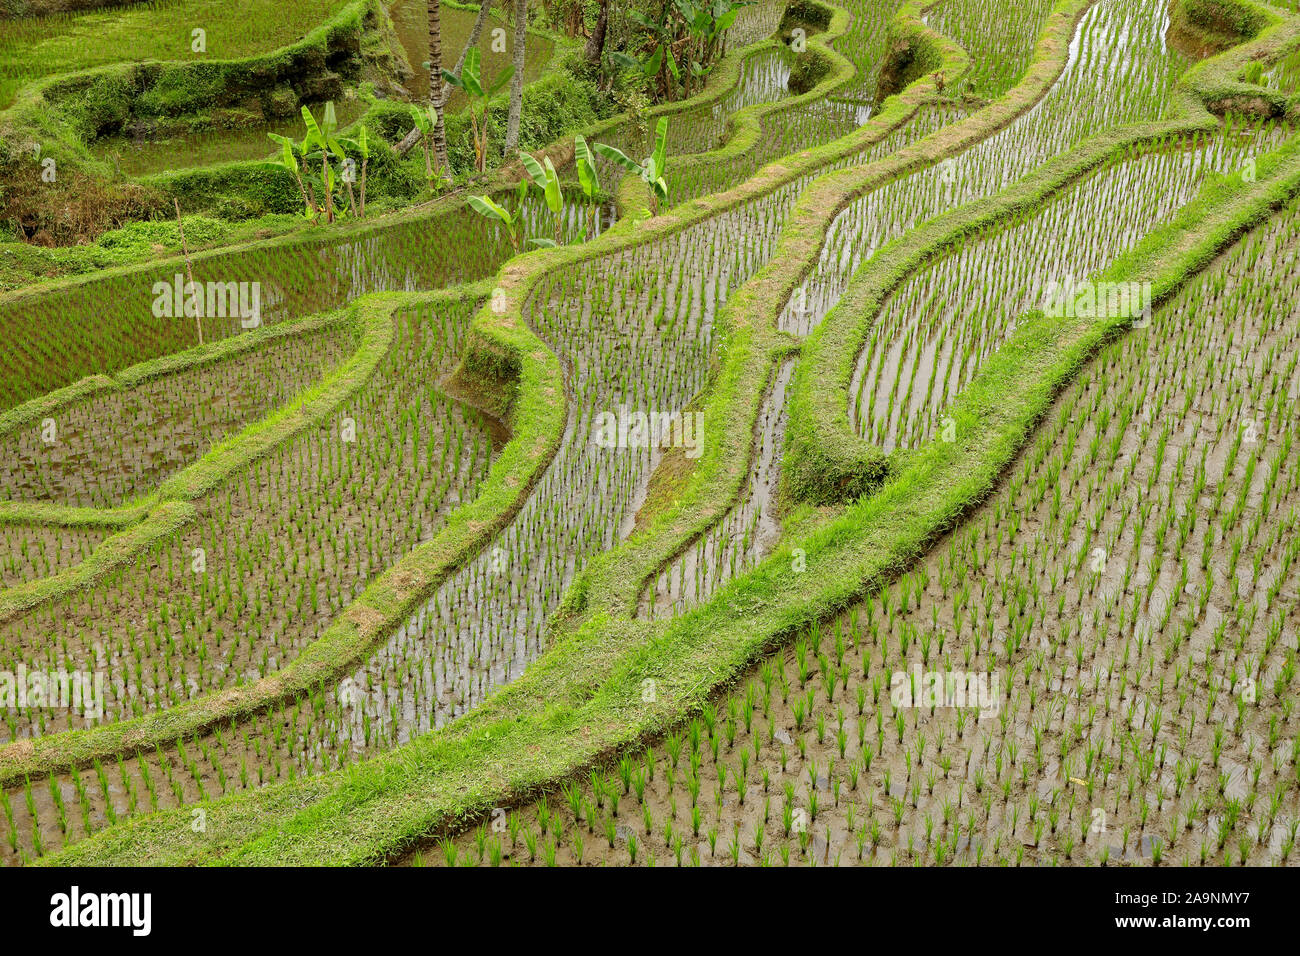 Mit Blick auf die üppig grüne Reisterrassen Tegallalang in Ubud, Bali, Indonesien Stockfoto